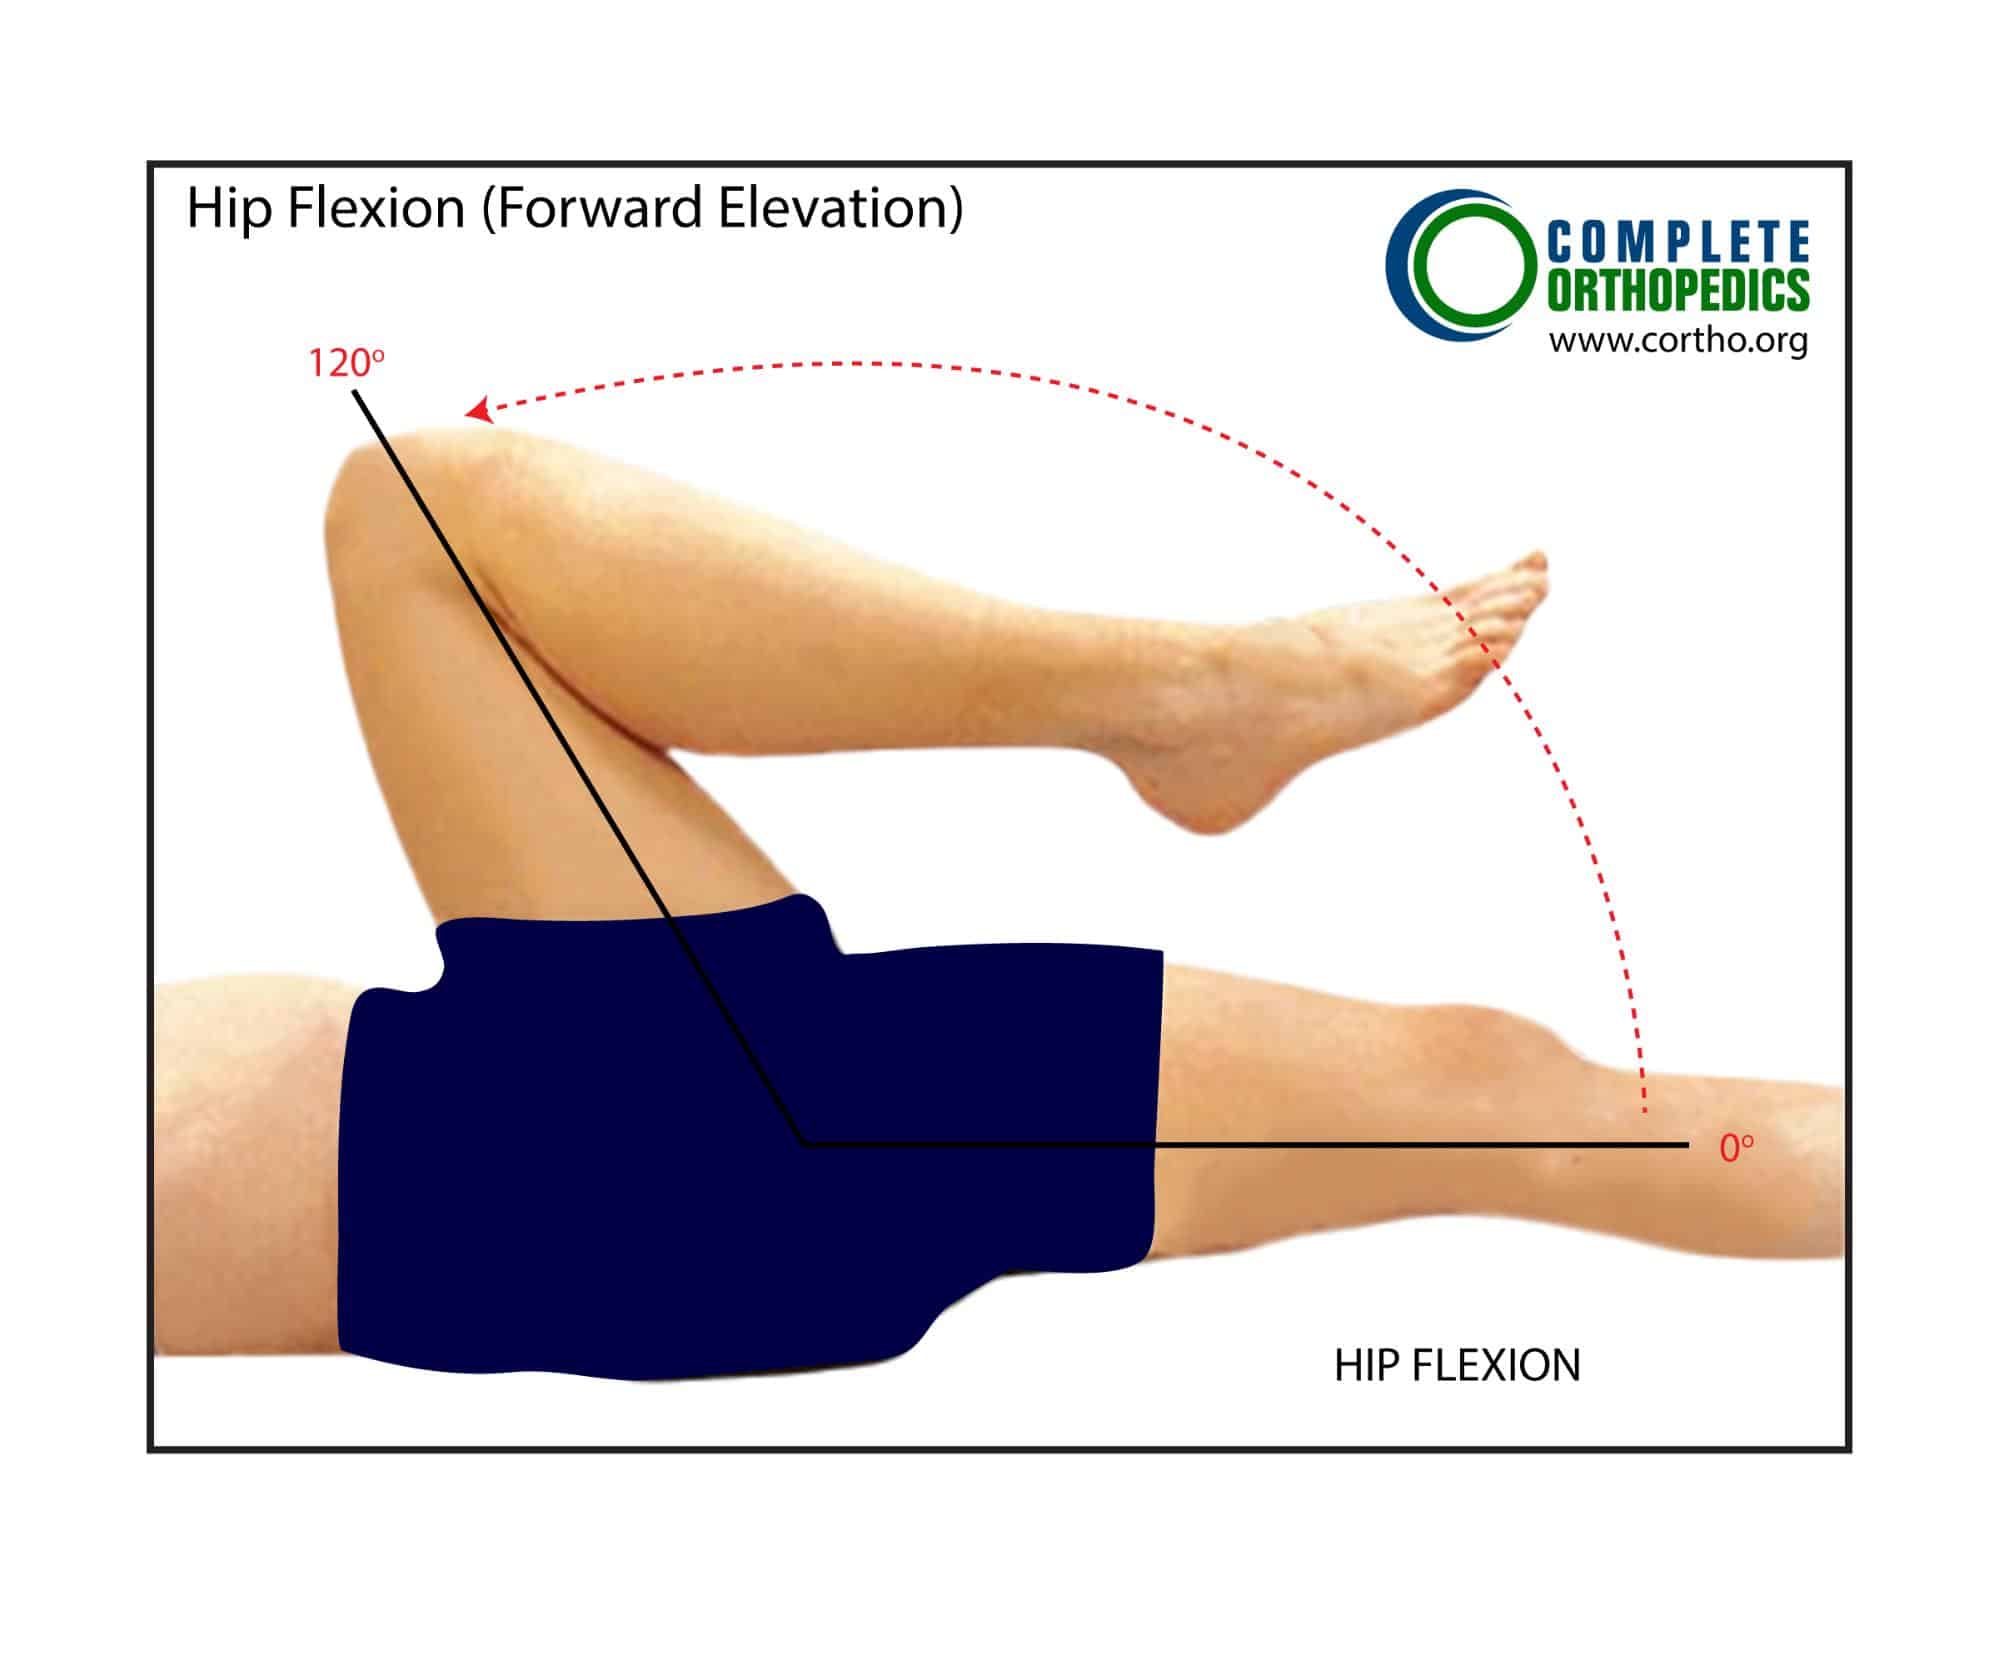 Figura: Extensión y flexión de la cadera